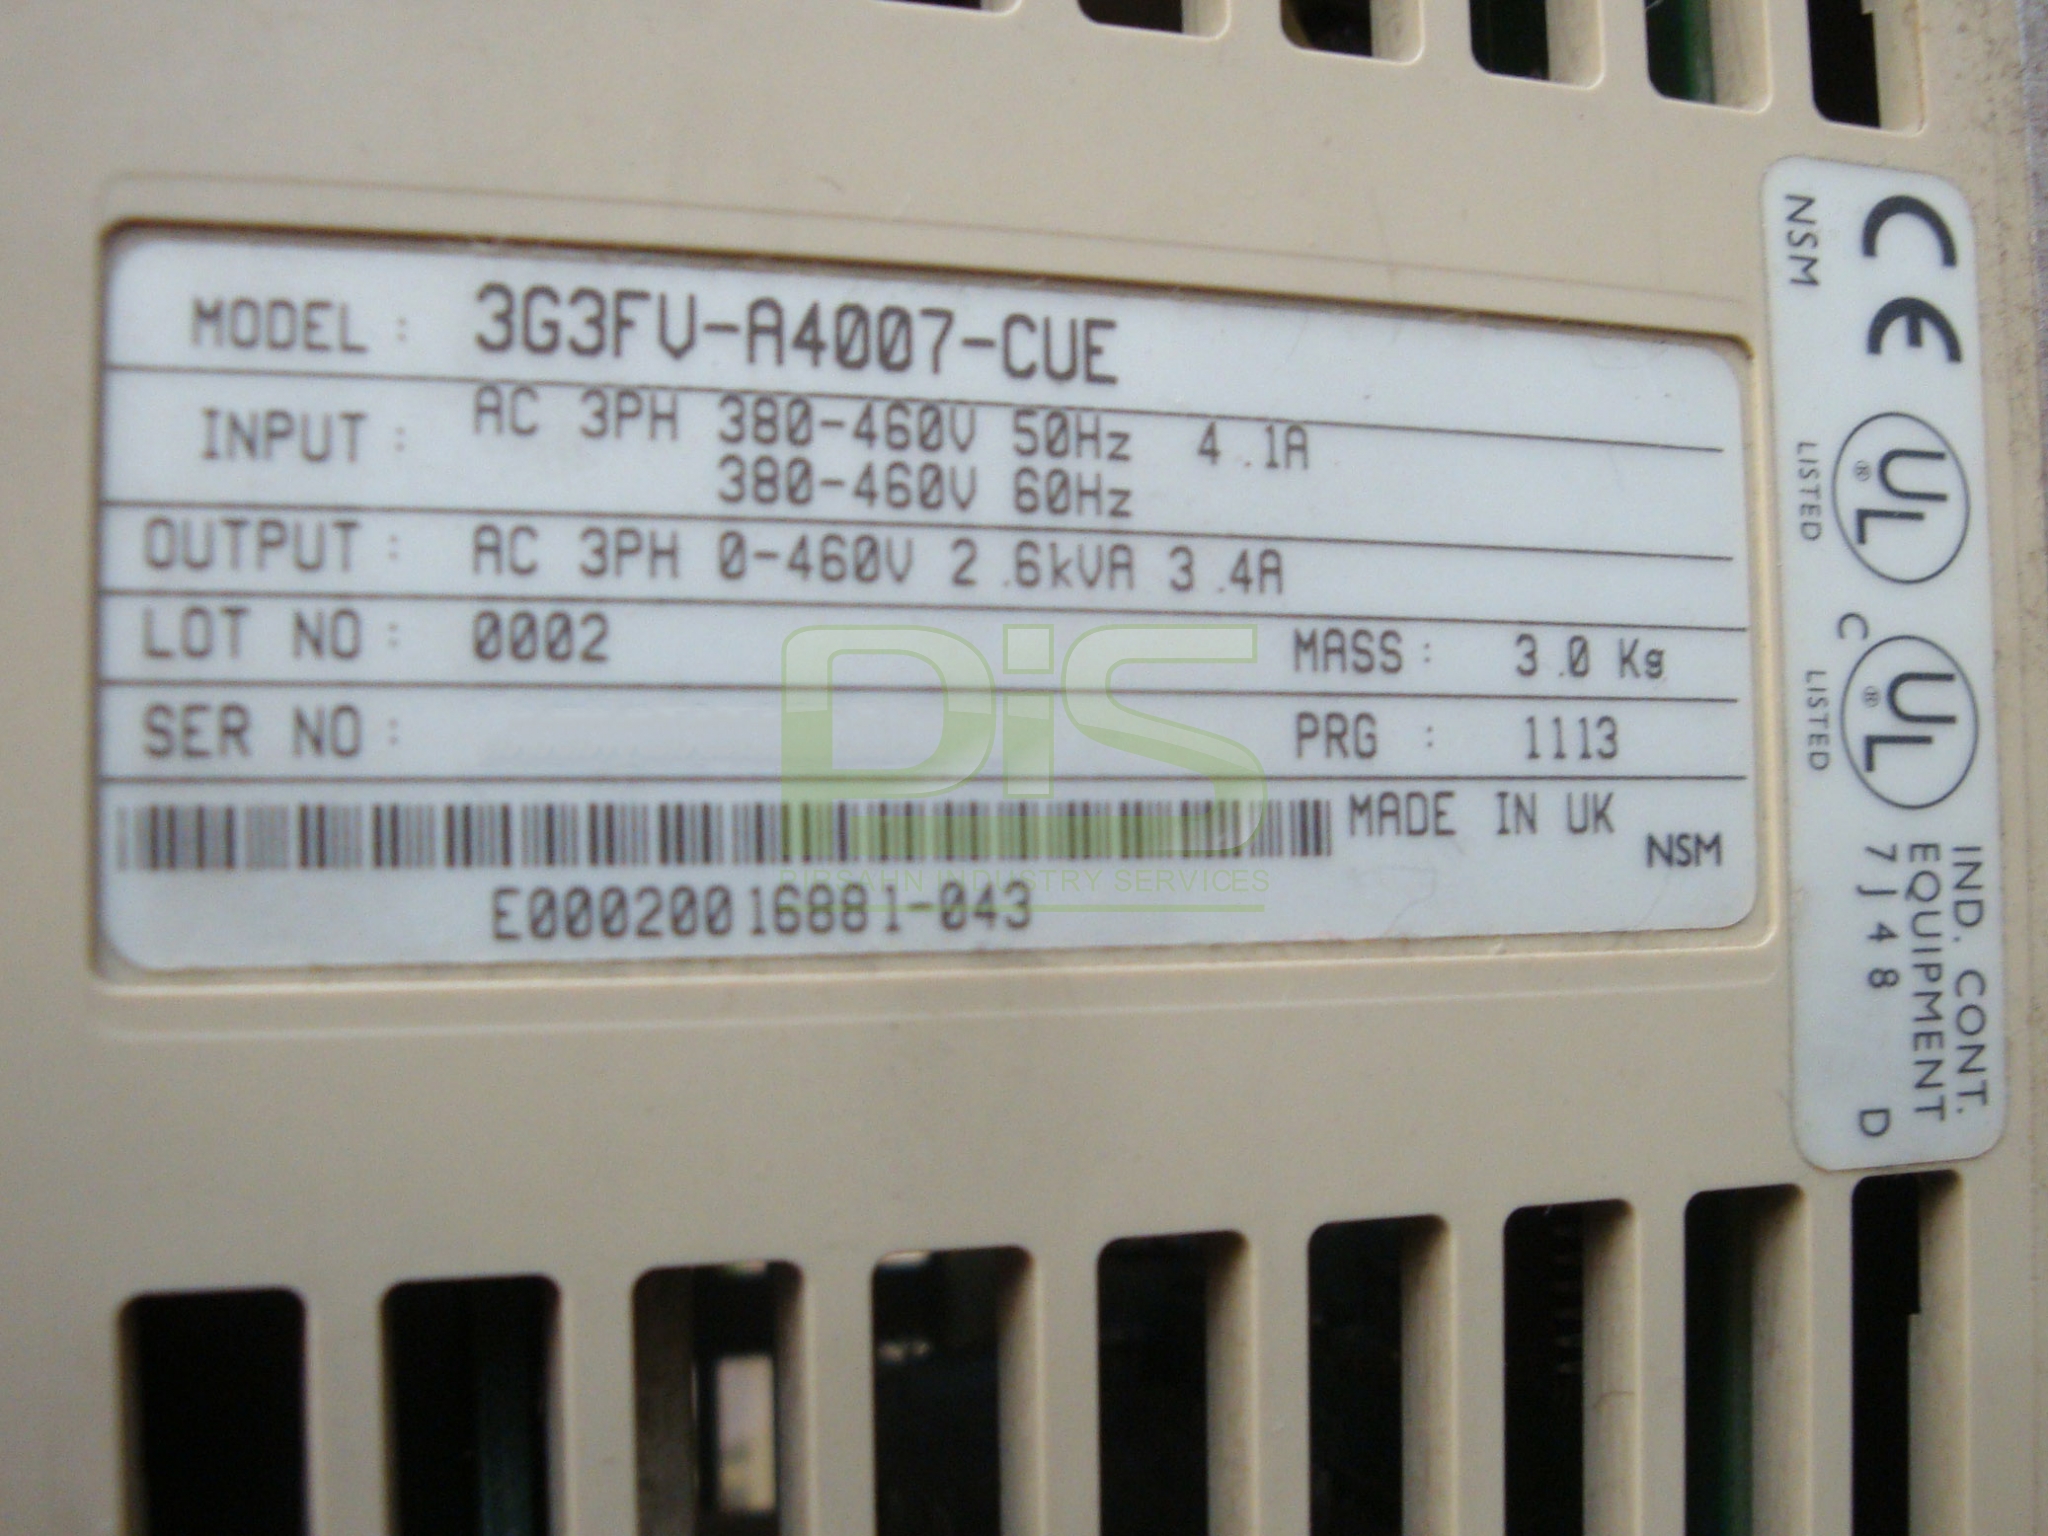 3G3FV-A4007-CUE